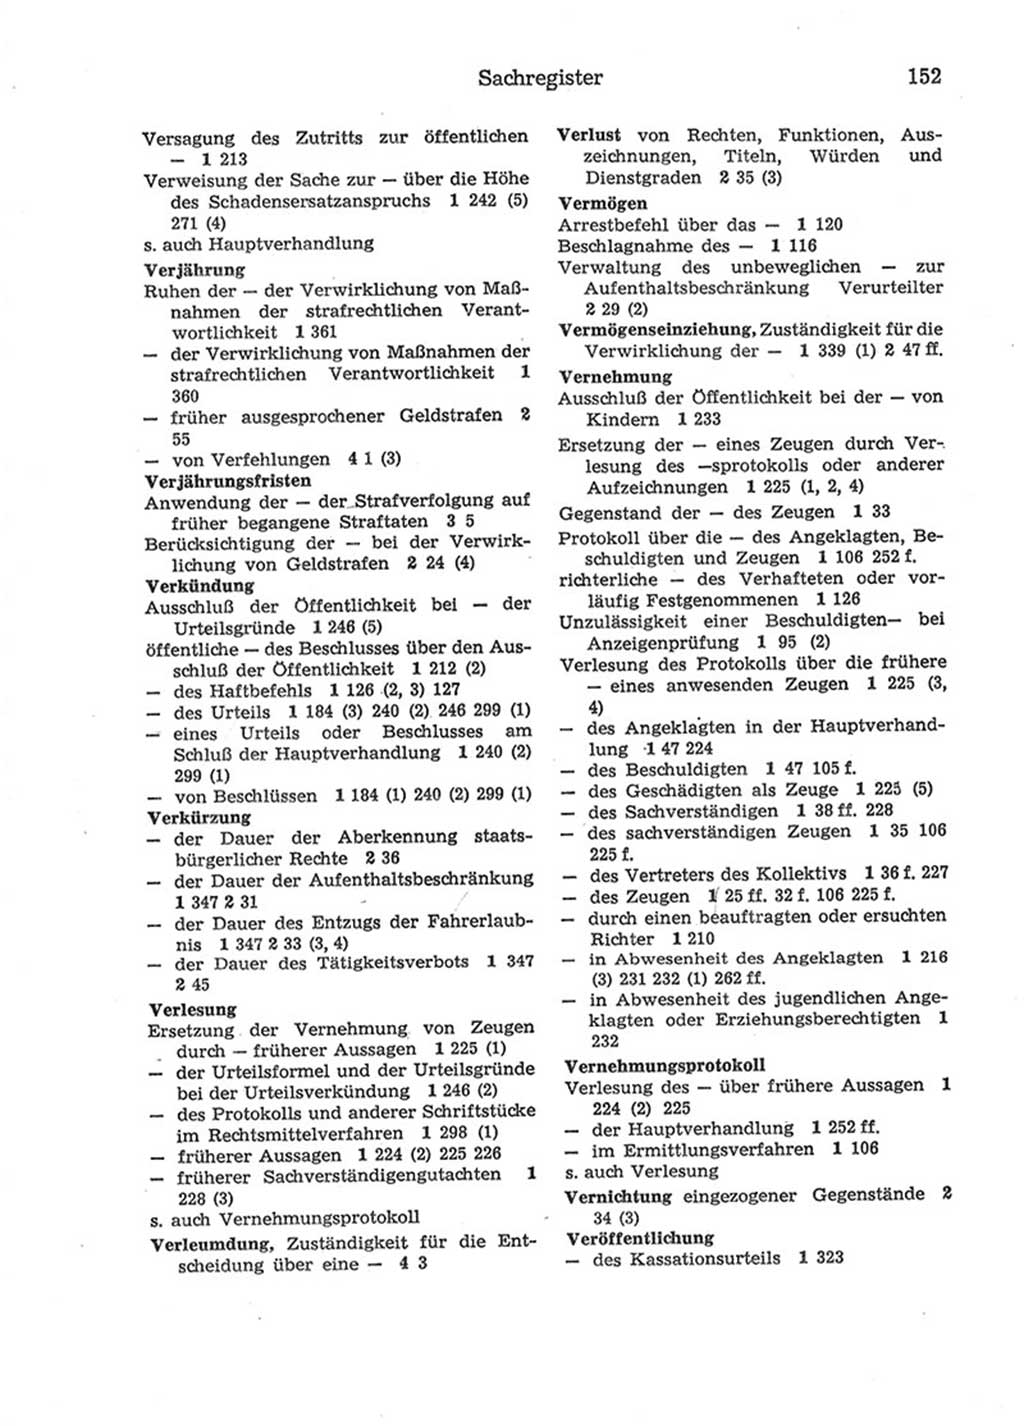 Strafprozeßordnung (StPO) der Deutschen Demokratischen Republik (DDR) 1975, Seite 152 (StPO DDR 1974, S. 152)